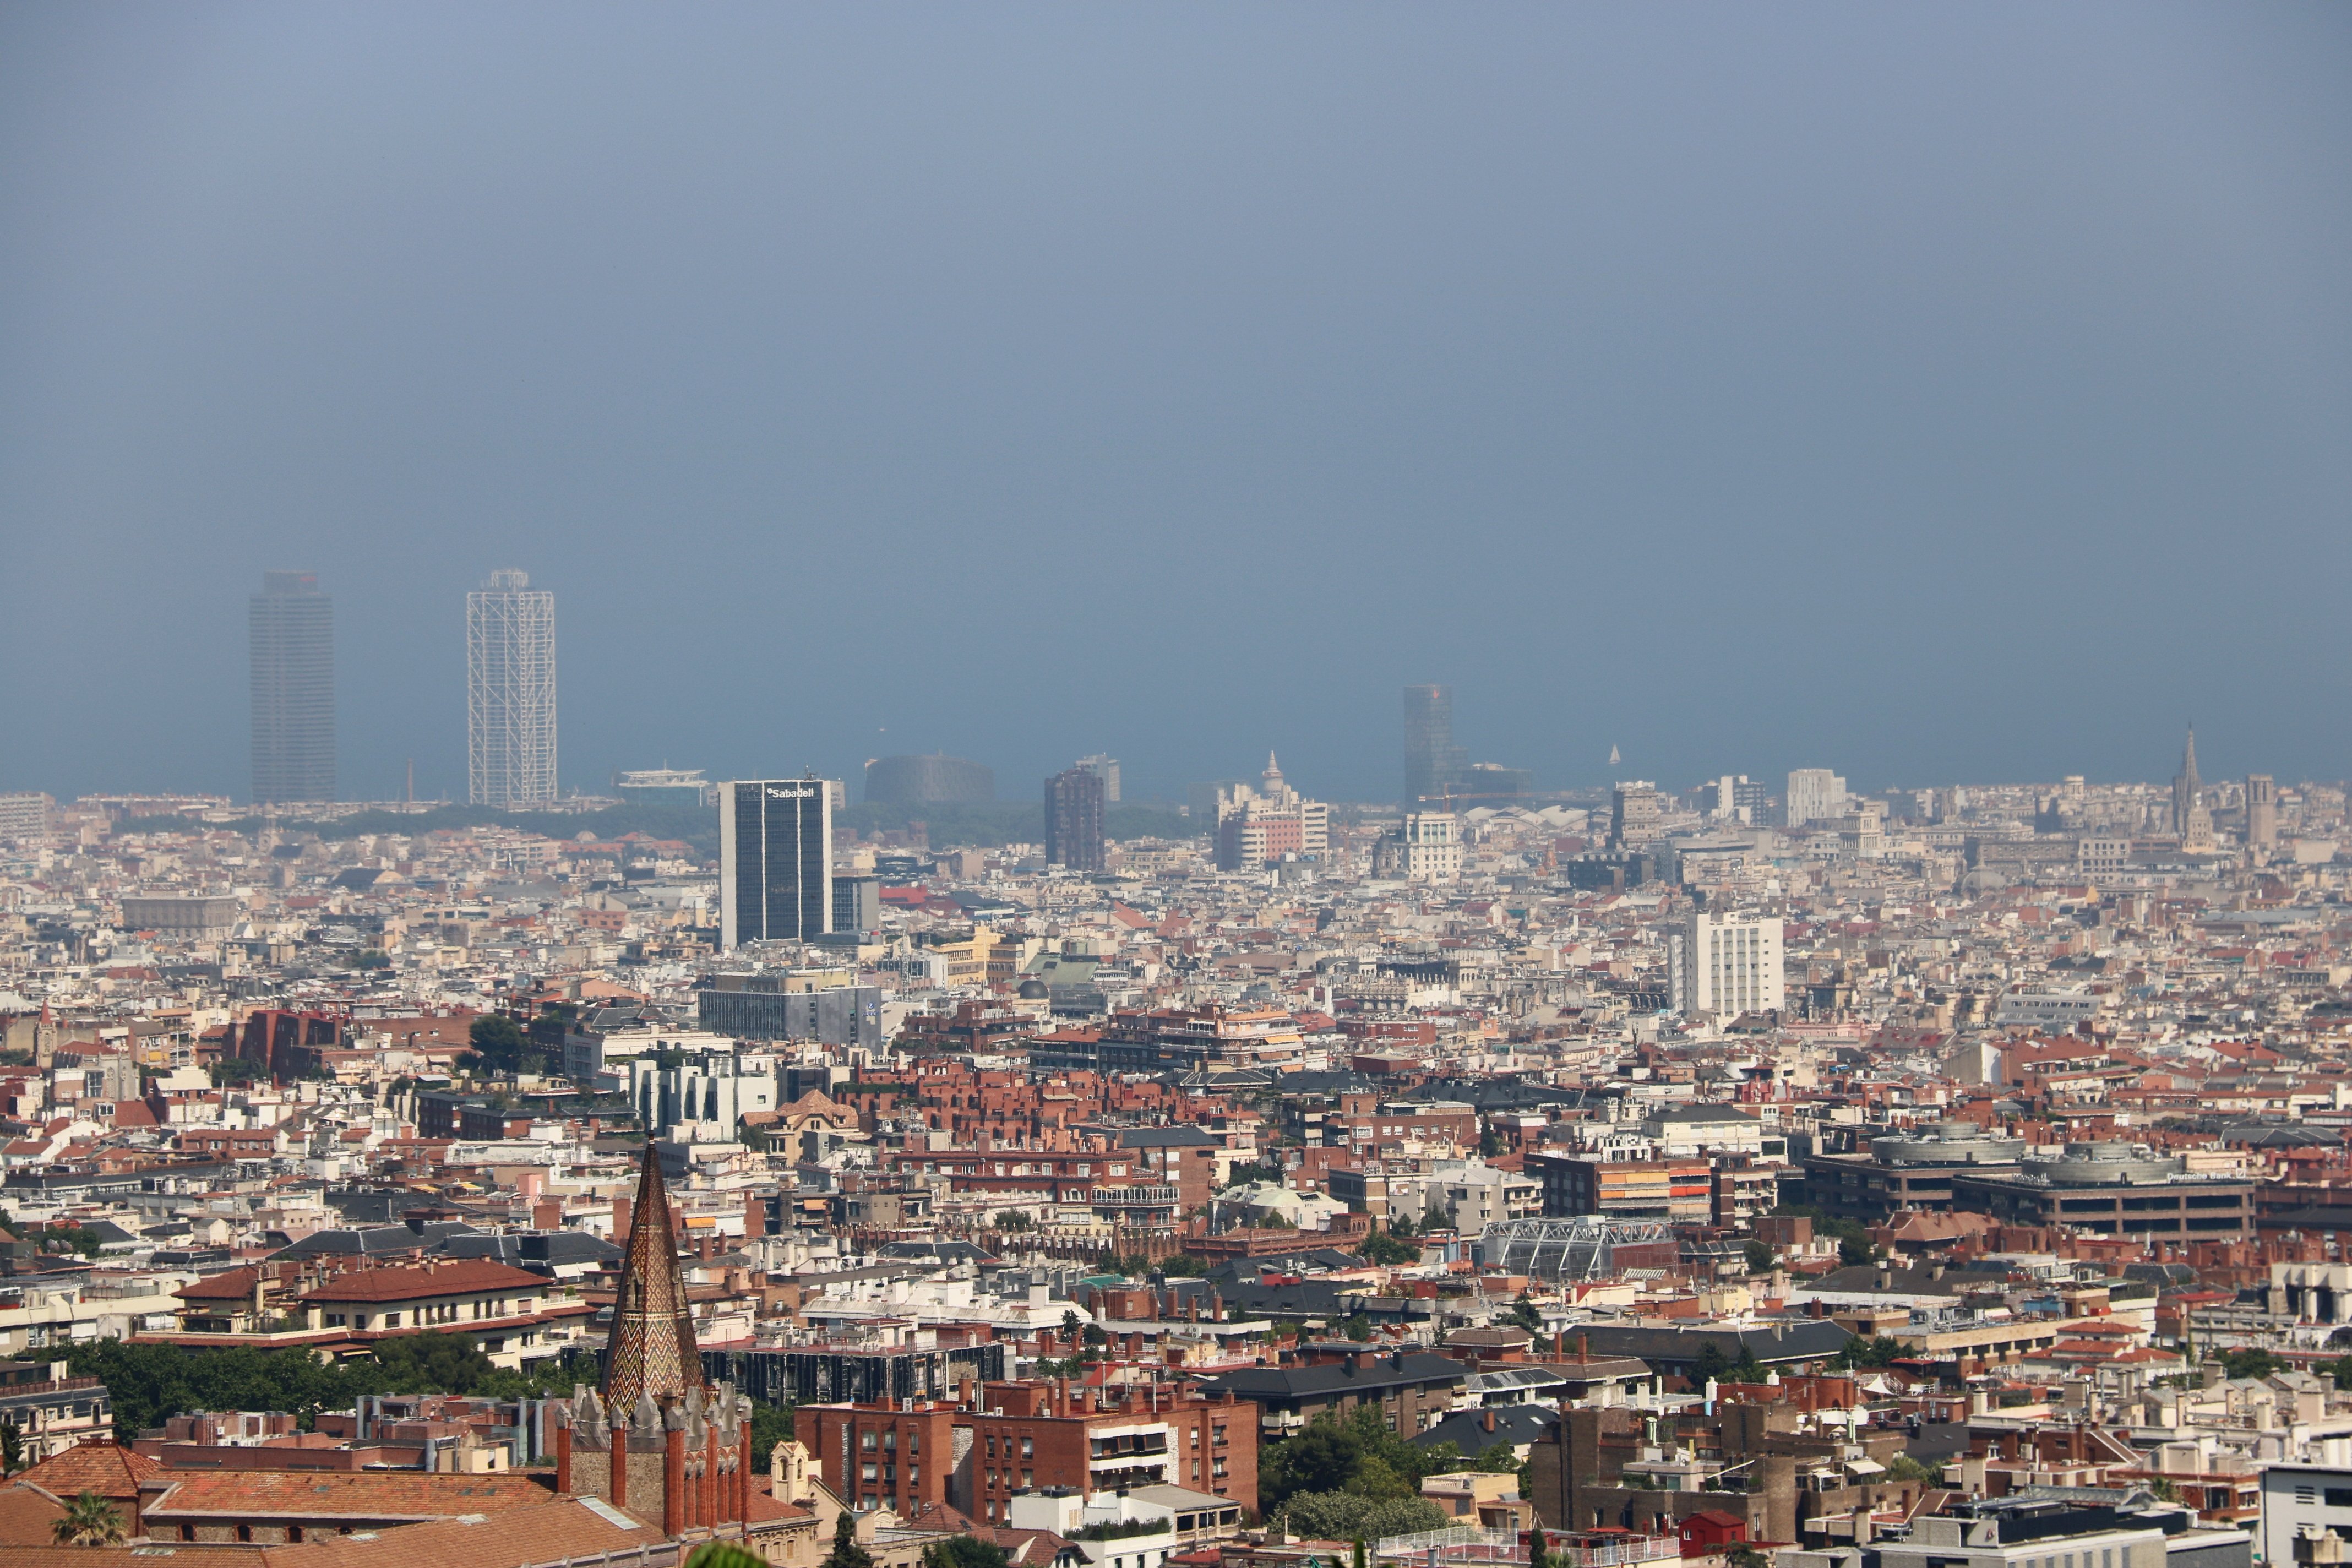 El TJUE renya Espanya perquè Barcelona va infringir "sistemàticament" la directiva de qualitat de l'aire